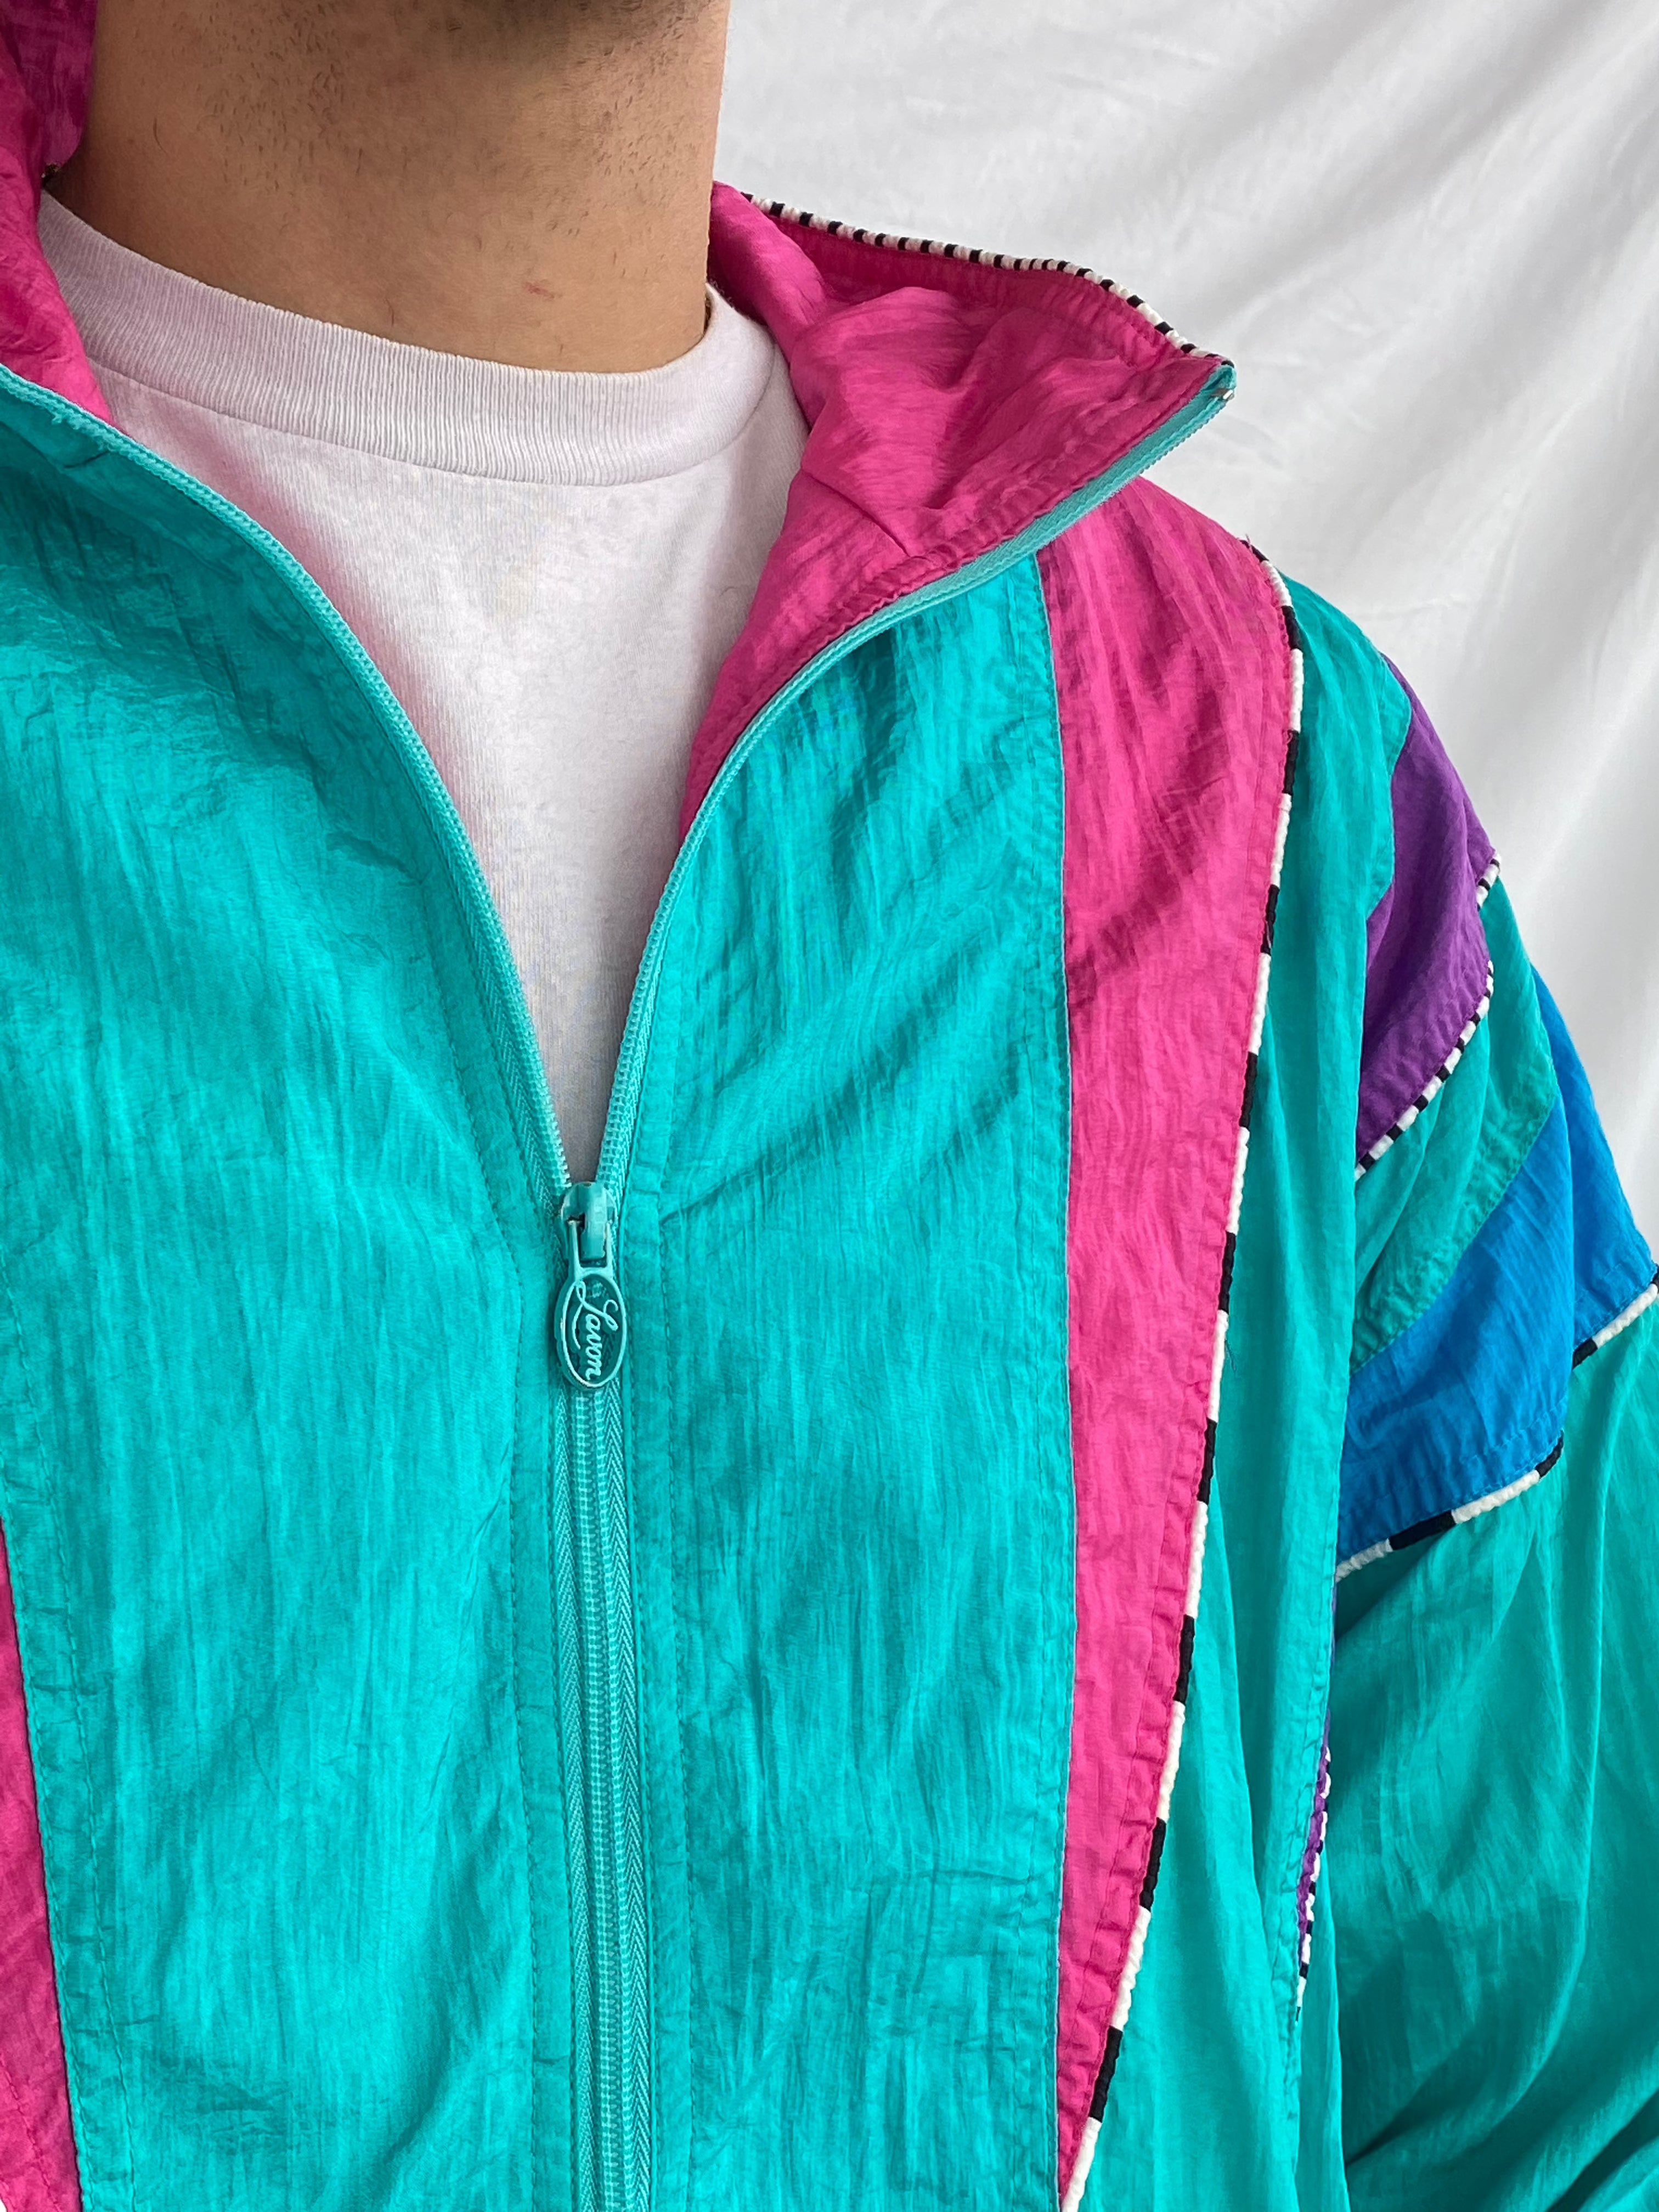 Vintage LAVON By Cheerful Corp Windbreaker Jacket - Balagan Vintage Windbreaker Jacket 80s, 90s, men, multicolored, nylon, outerwear, streetwear, techno, vintage, vintage windbreaker, windbreaker, windbreaker jacket, winter